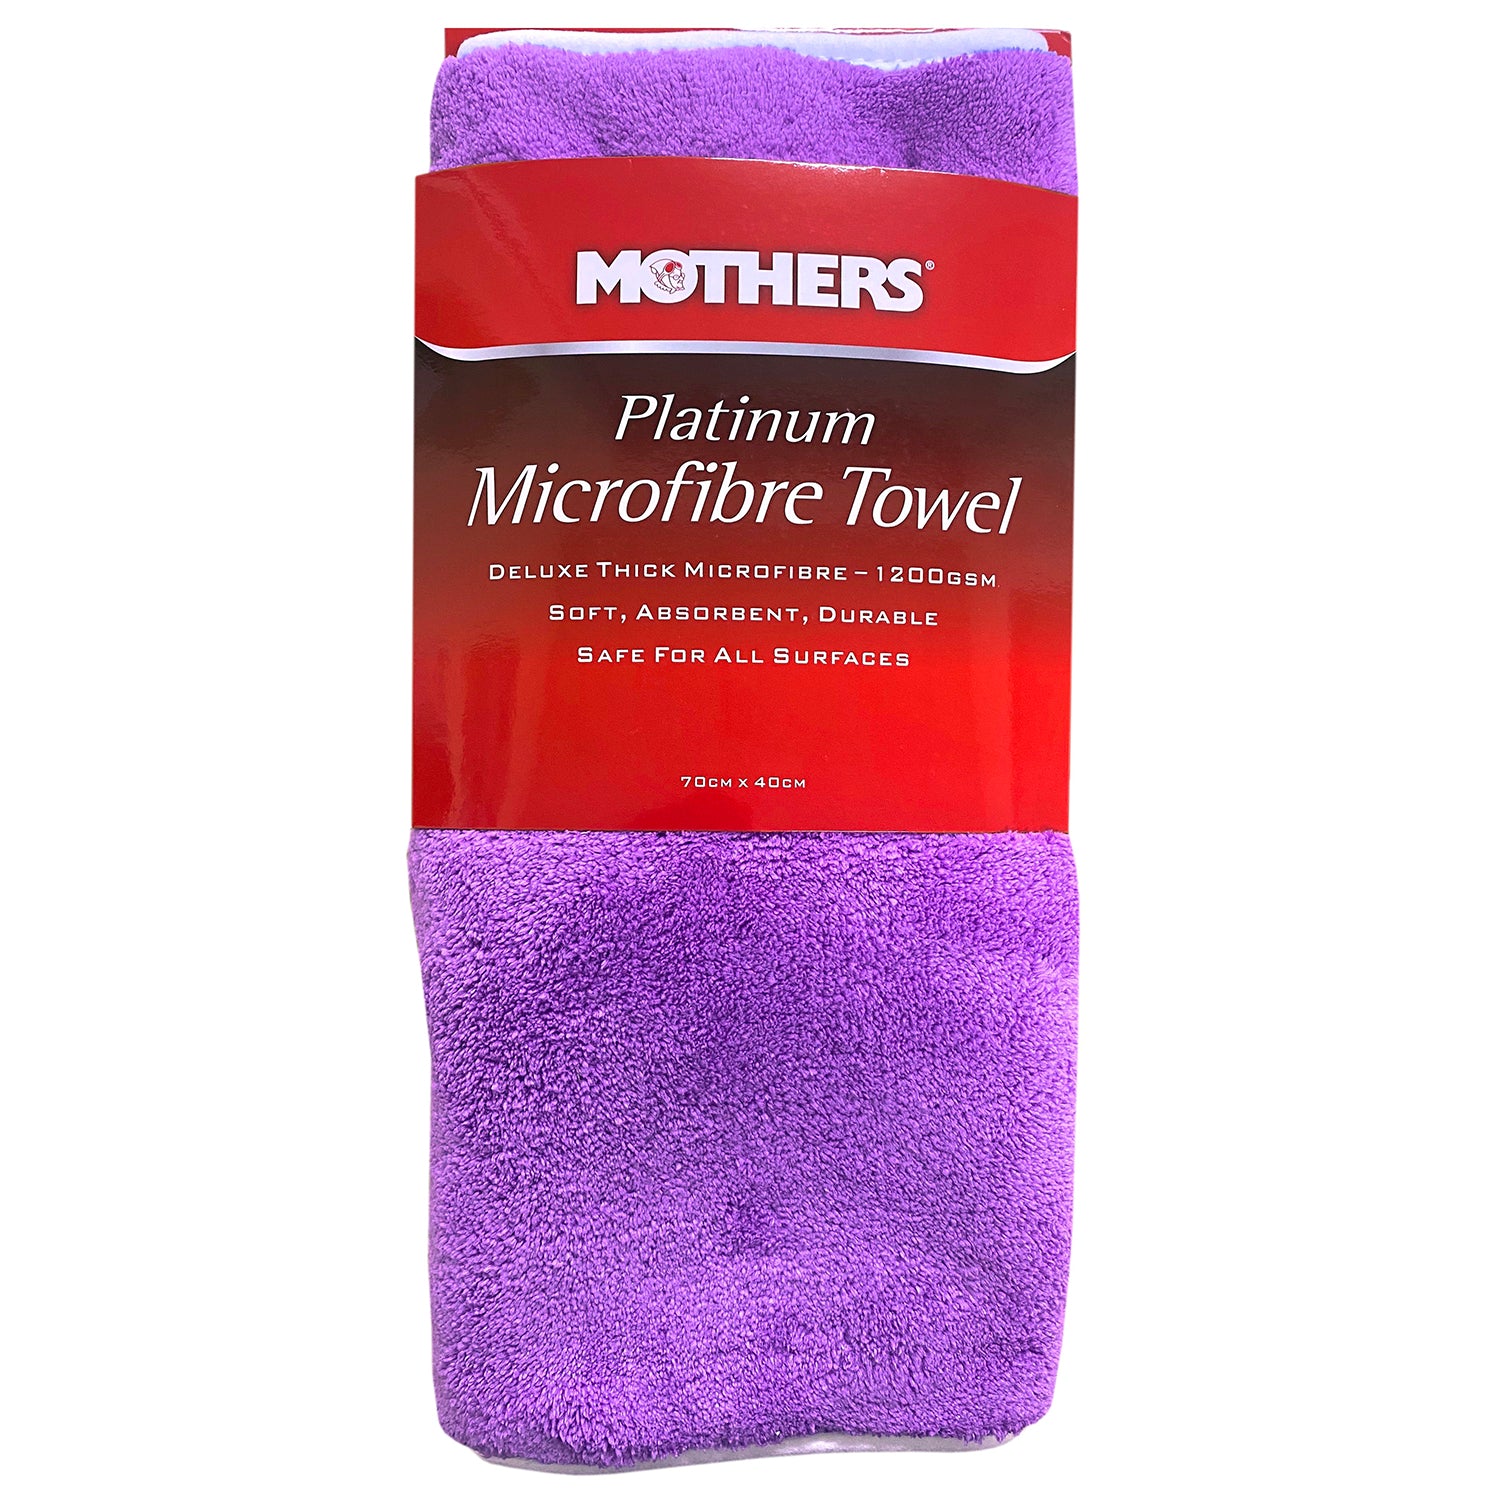 Mothers Platinum Microfibre Towel 70cm x 40cm - 6720200